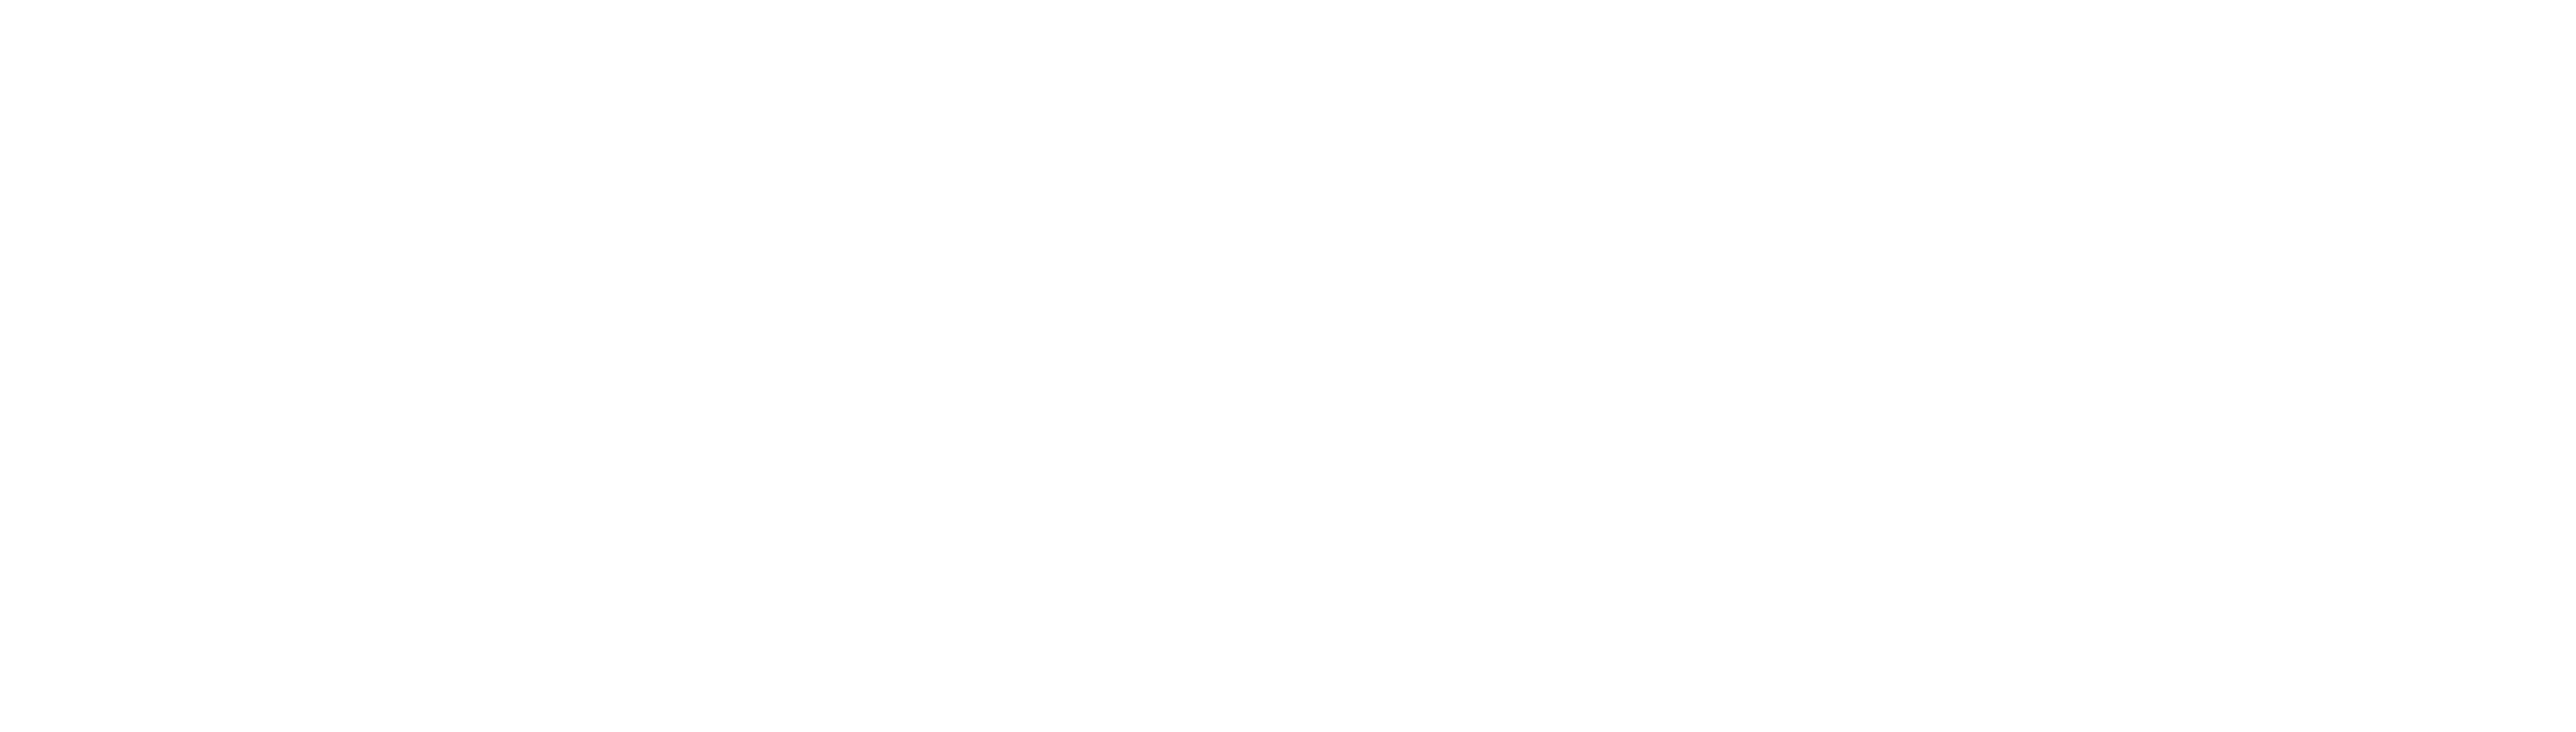 Logo maxxa blanco